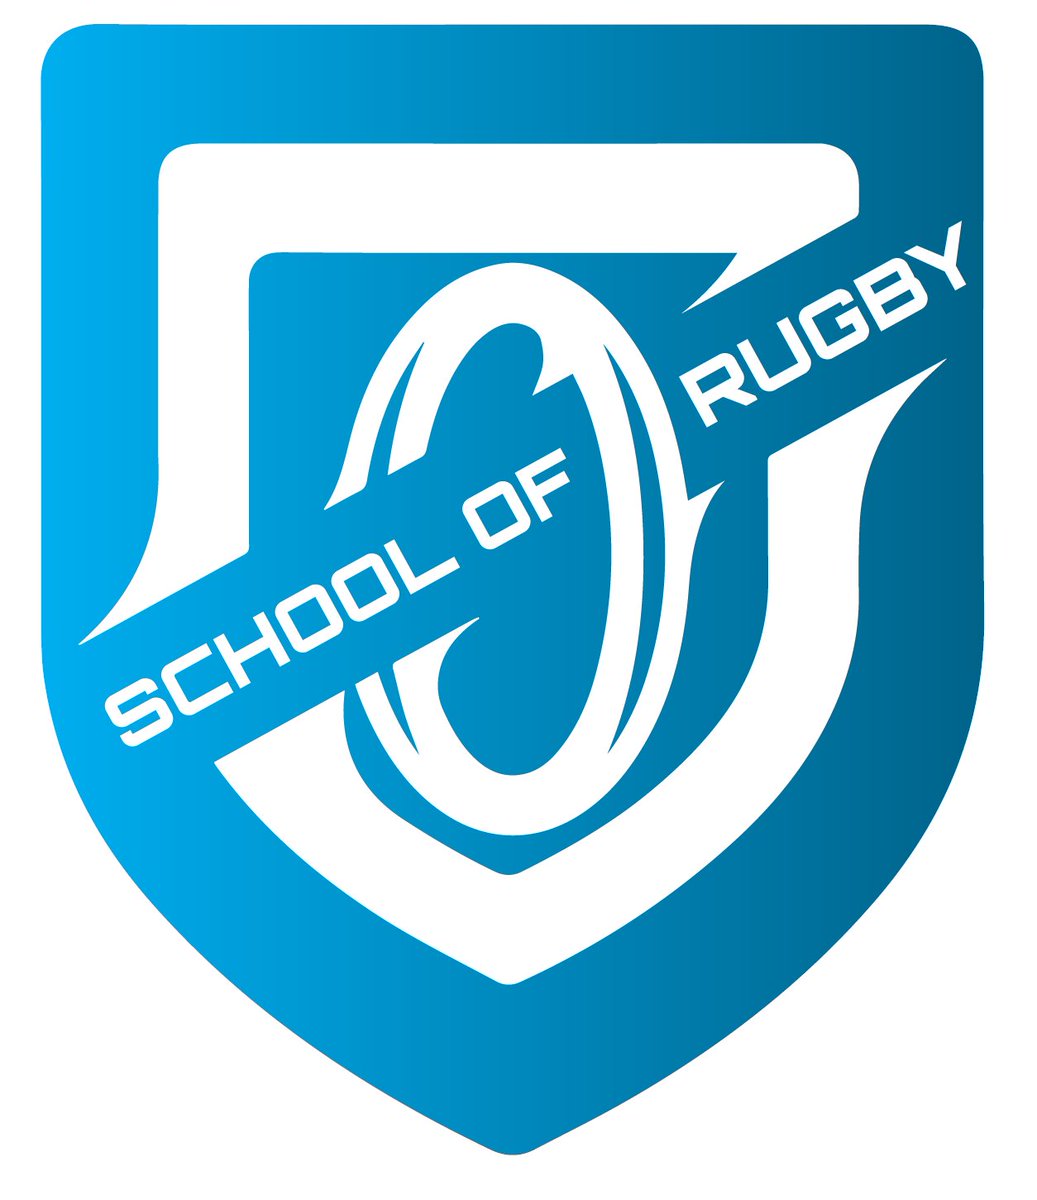 FSKQQs1WYAA99LK School of Rugby | Wesgrow-reeks gereed om in 2022 nuwe hoogtes te bereik - School of Rugby